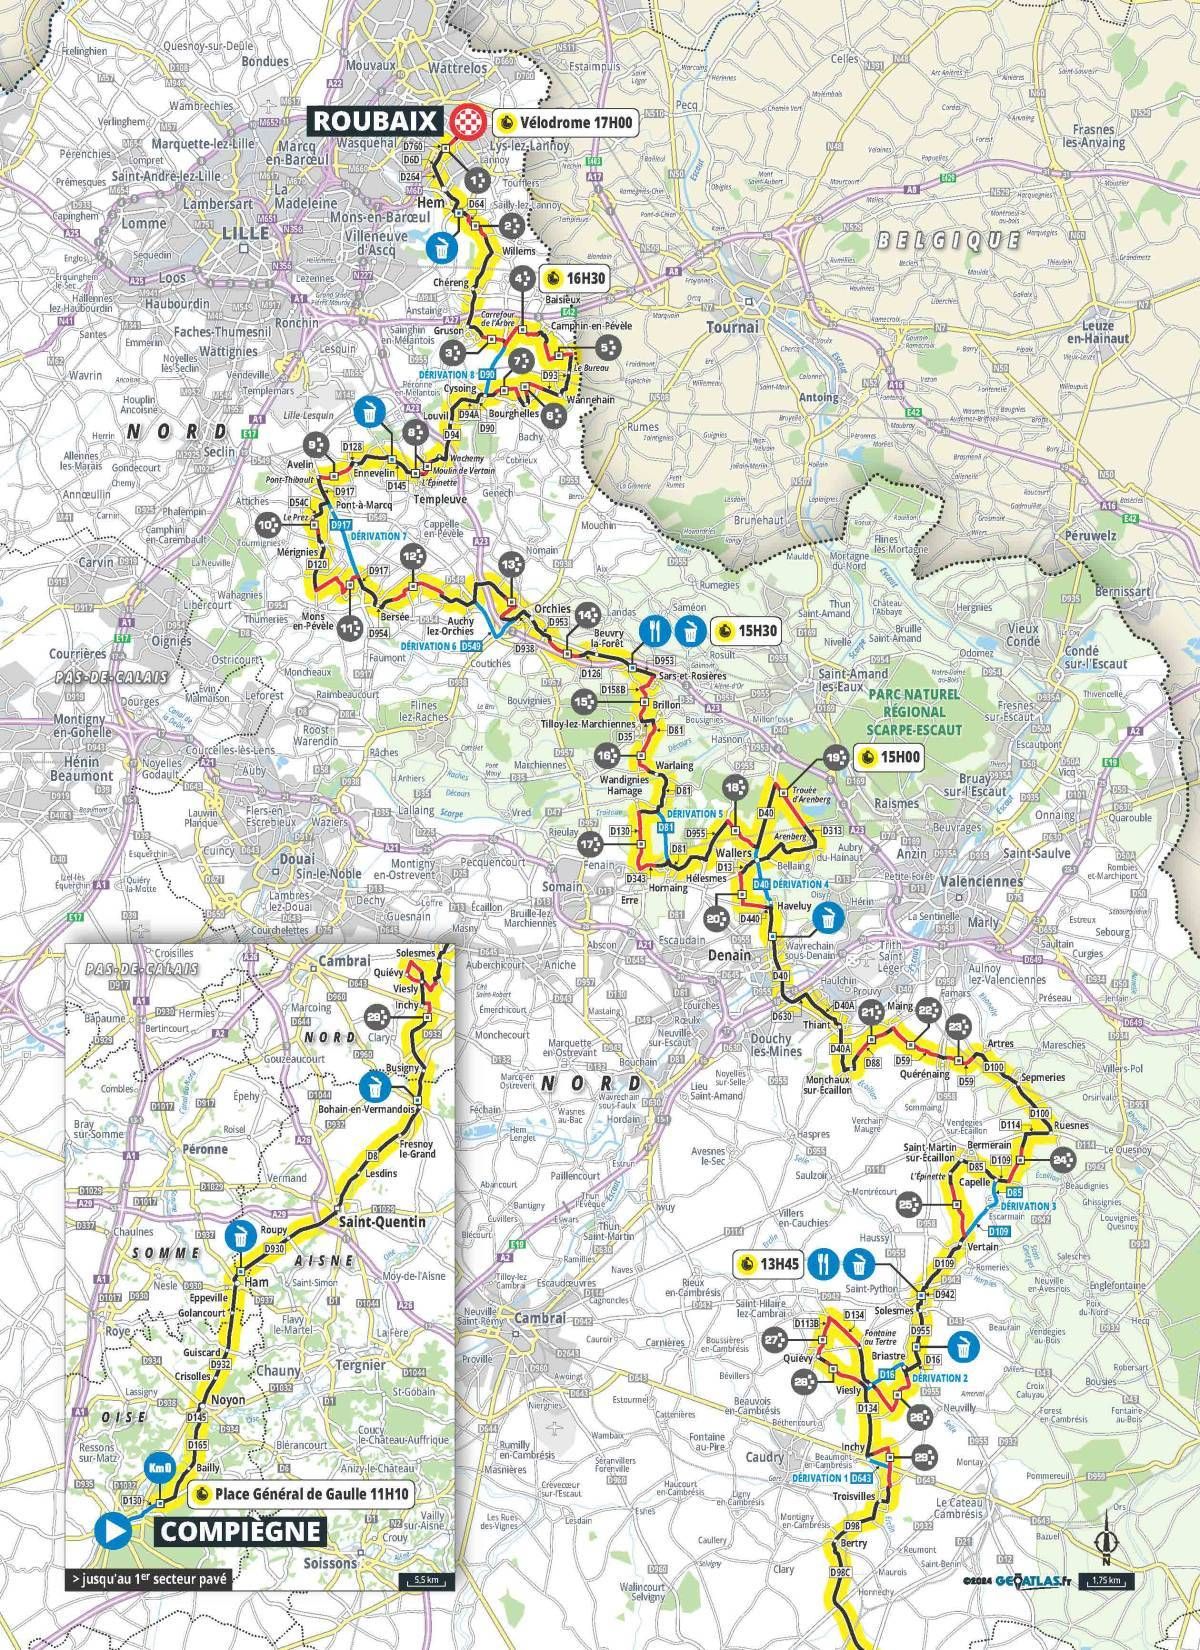 PREVIA | París-Roubaix 2024: Mathieu van der Poel, a seguir haciendo historia mientras Movistar Team busca resarcirse tras hundirse en Flandes